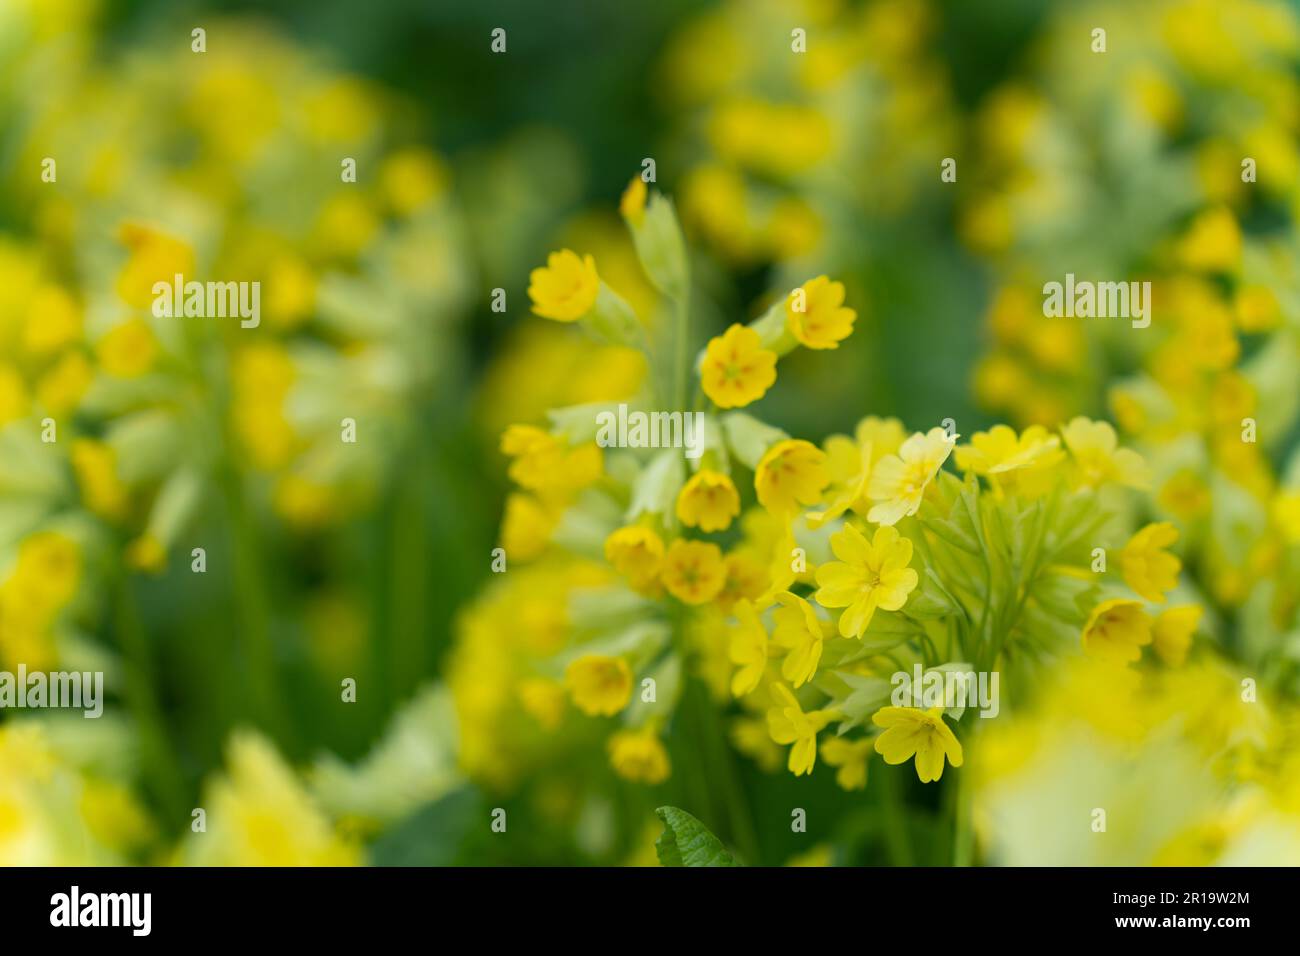 Grande tasse primrose lat. Primula macrocalice est une plante herbacée vivace, une espèce du genre Primrose Primula de la famille Primulaceae Primulac Banque D'Images